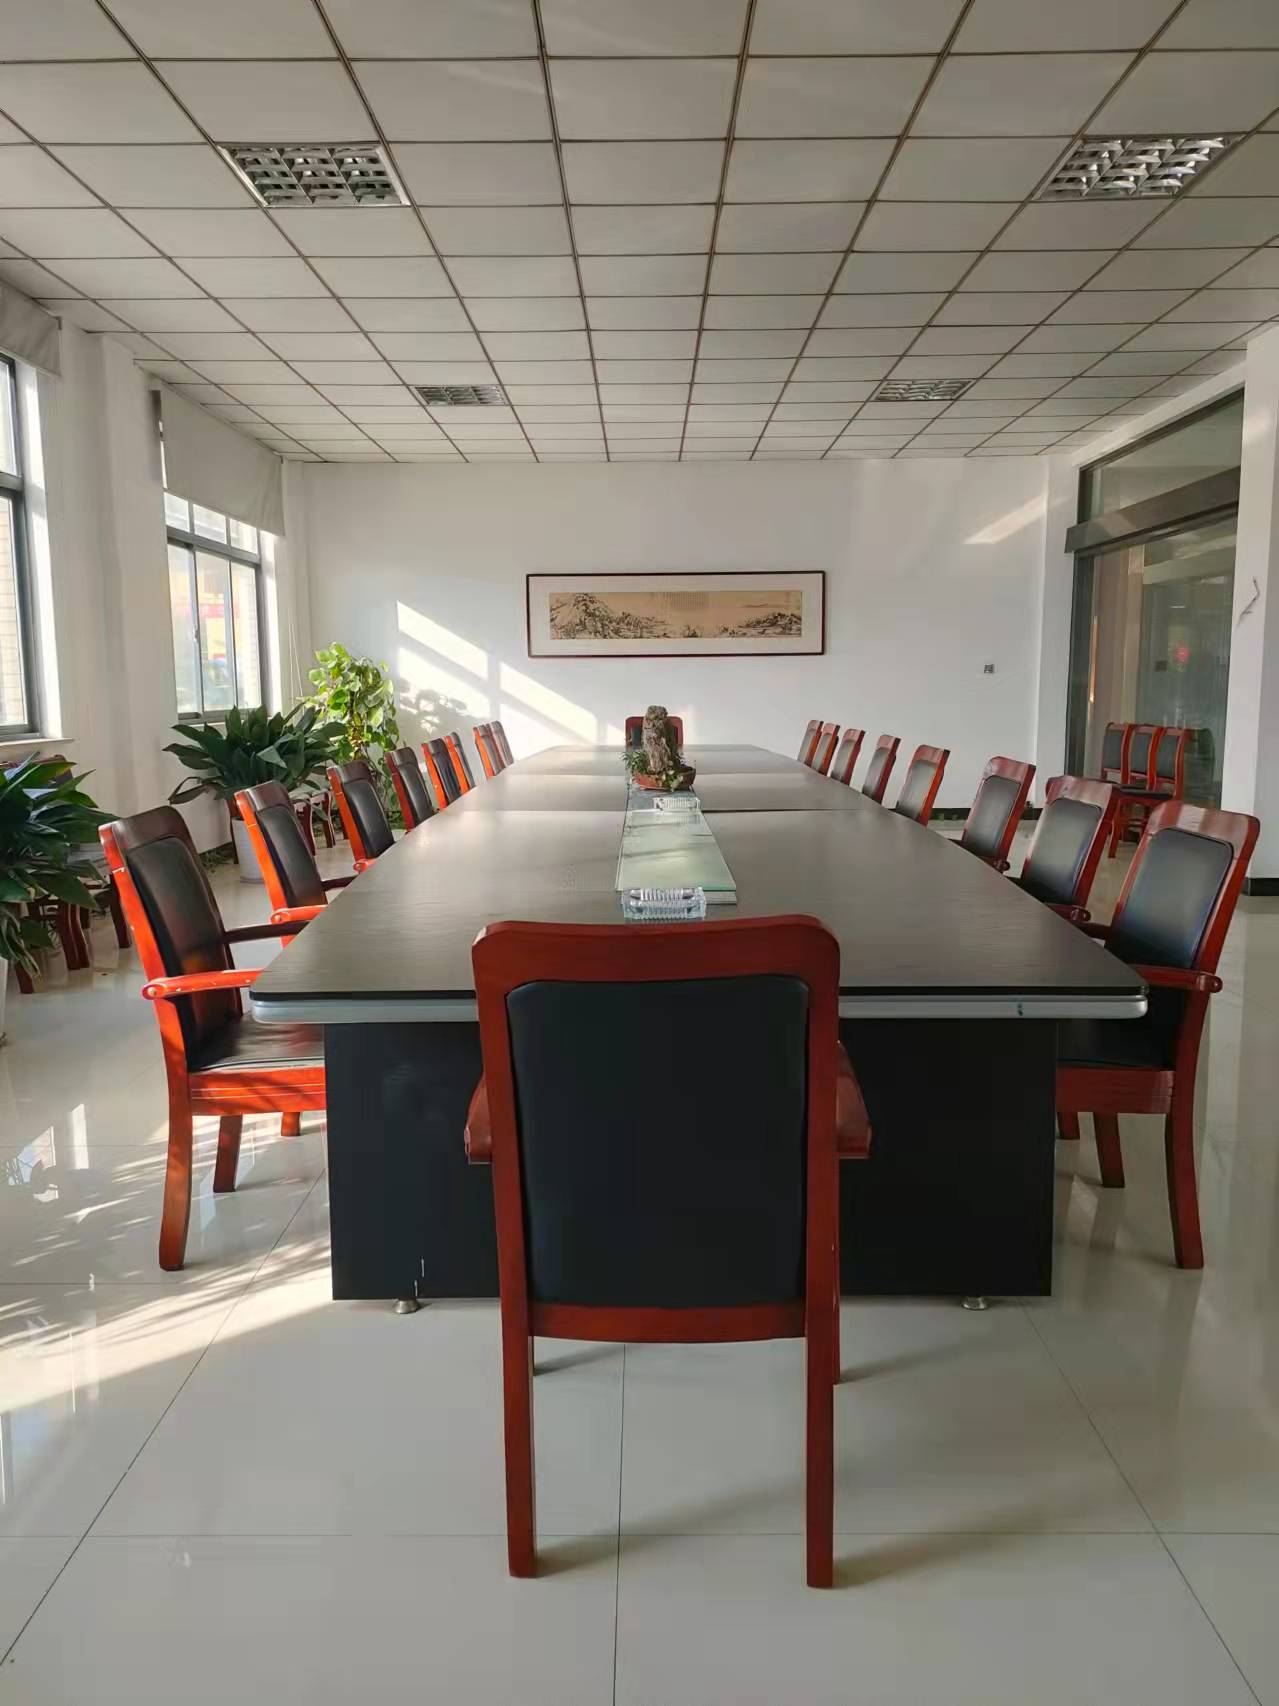 Company meeting room